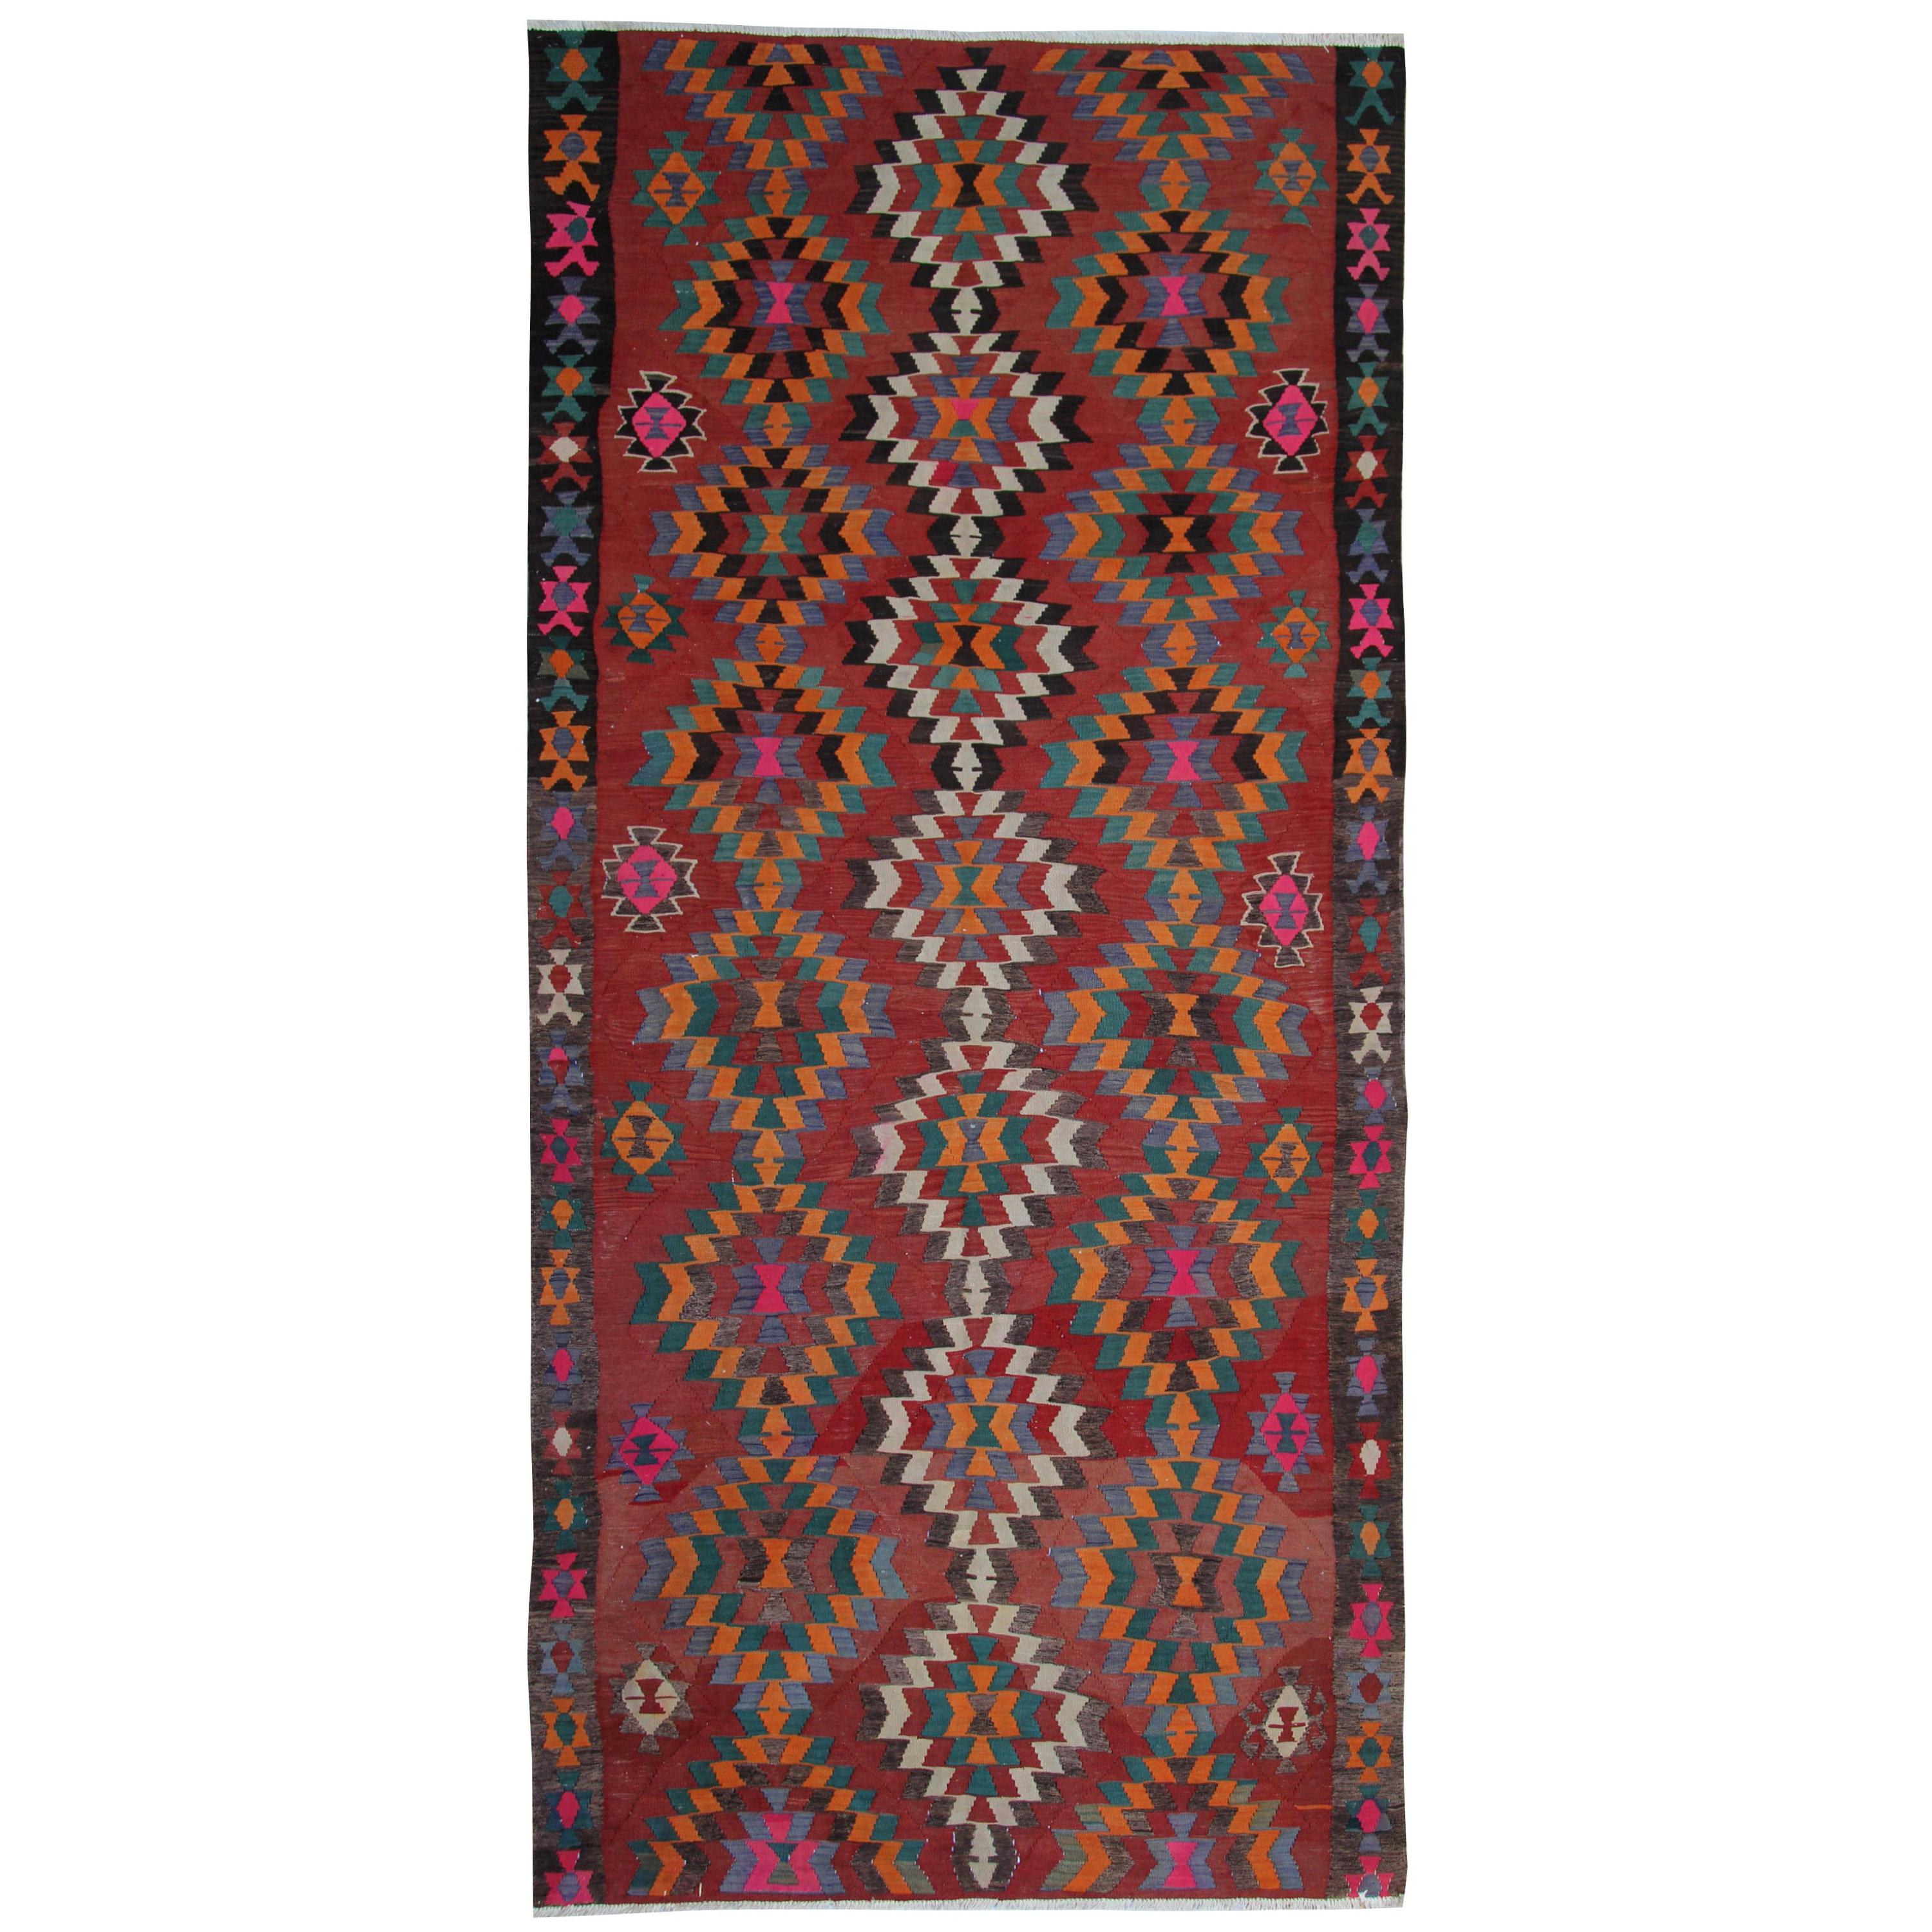 Antique Rugs Vintage Oriental Rug Handwoven Carpet  Turkish Kilim Rug Runner For Sale